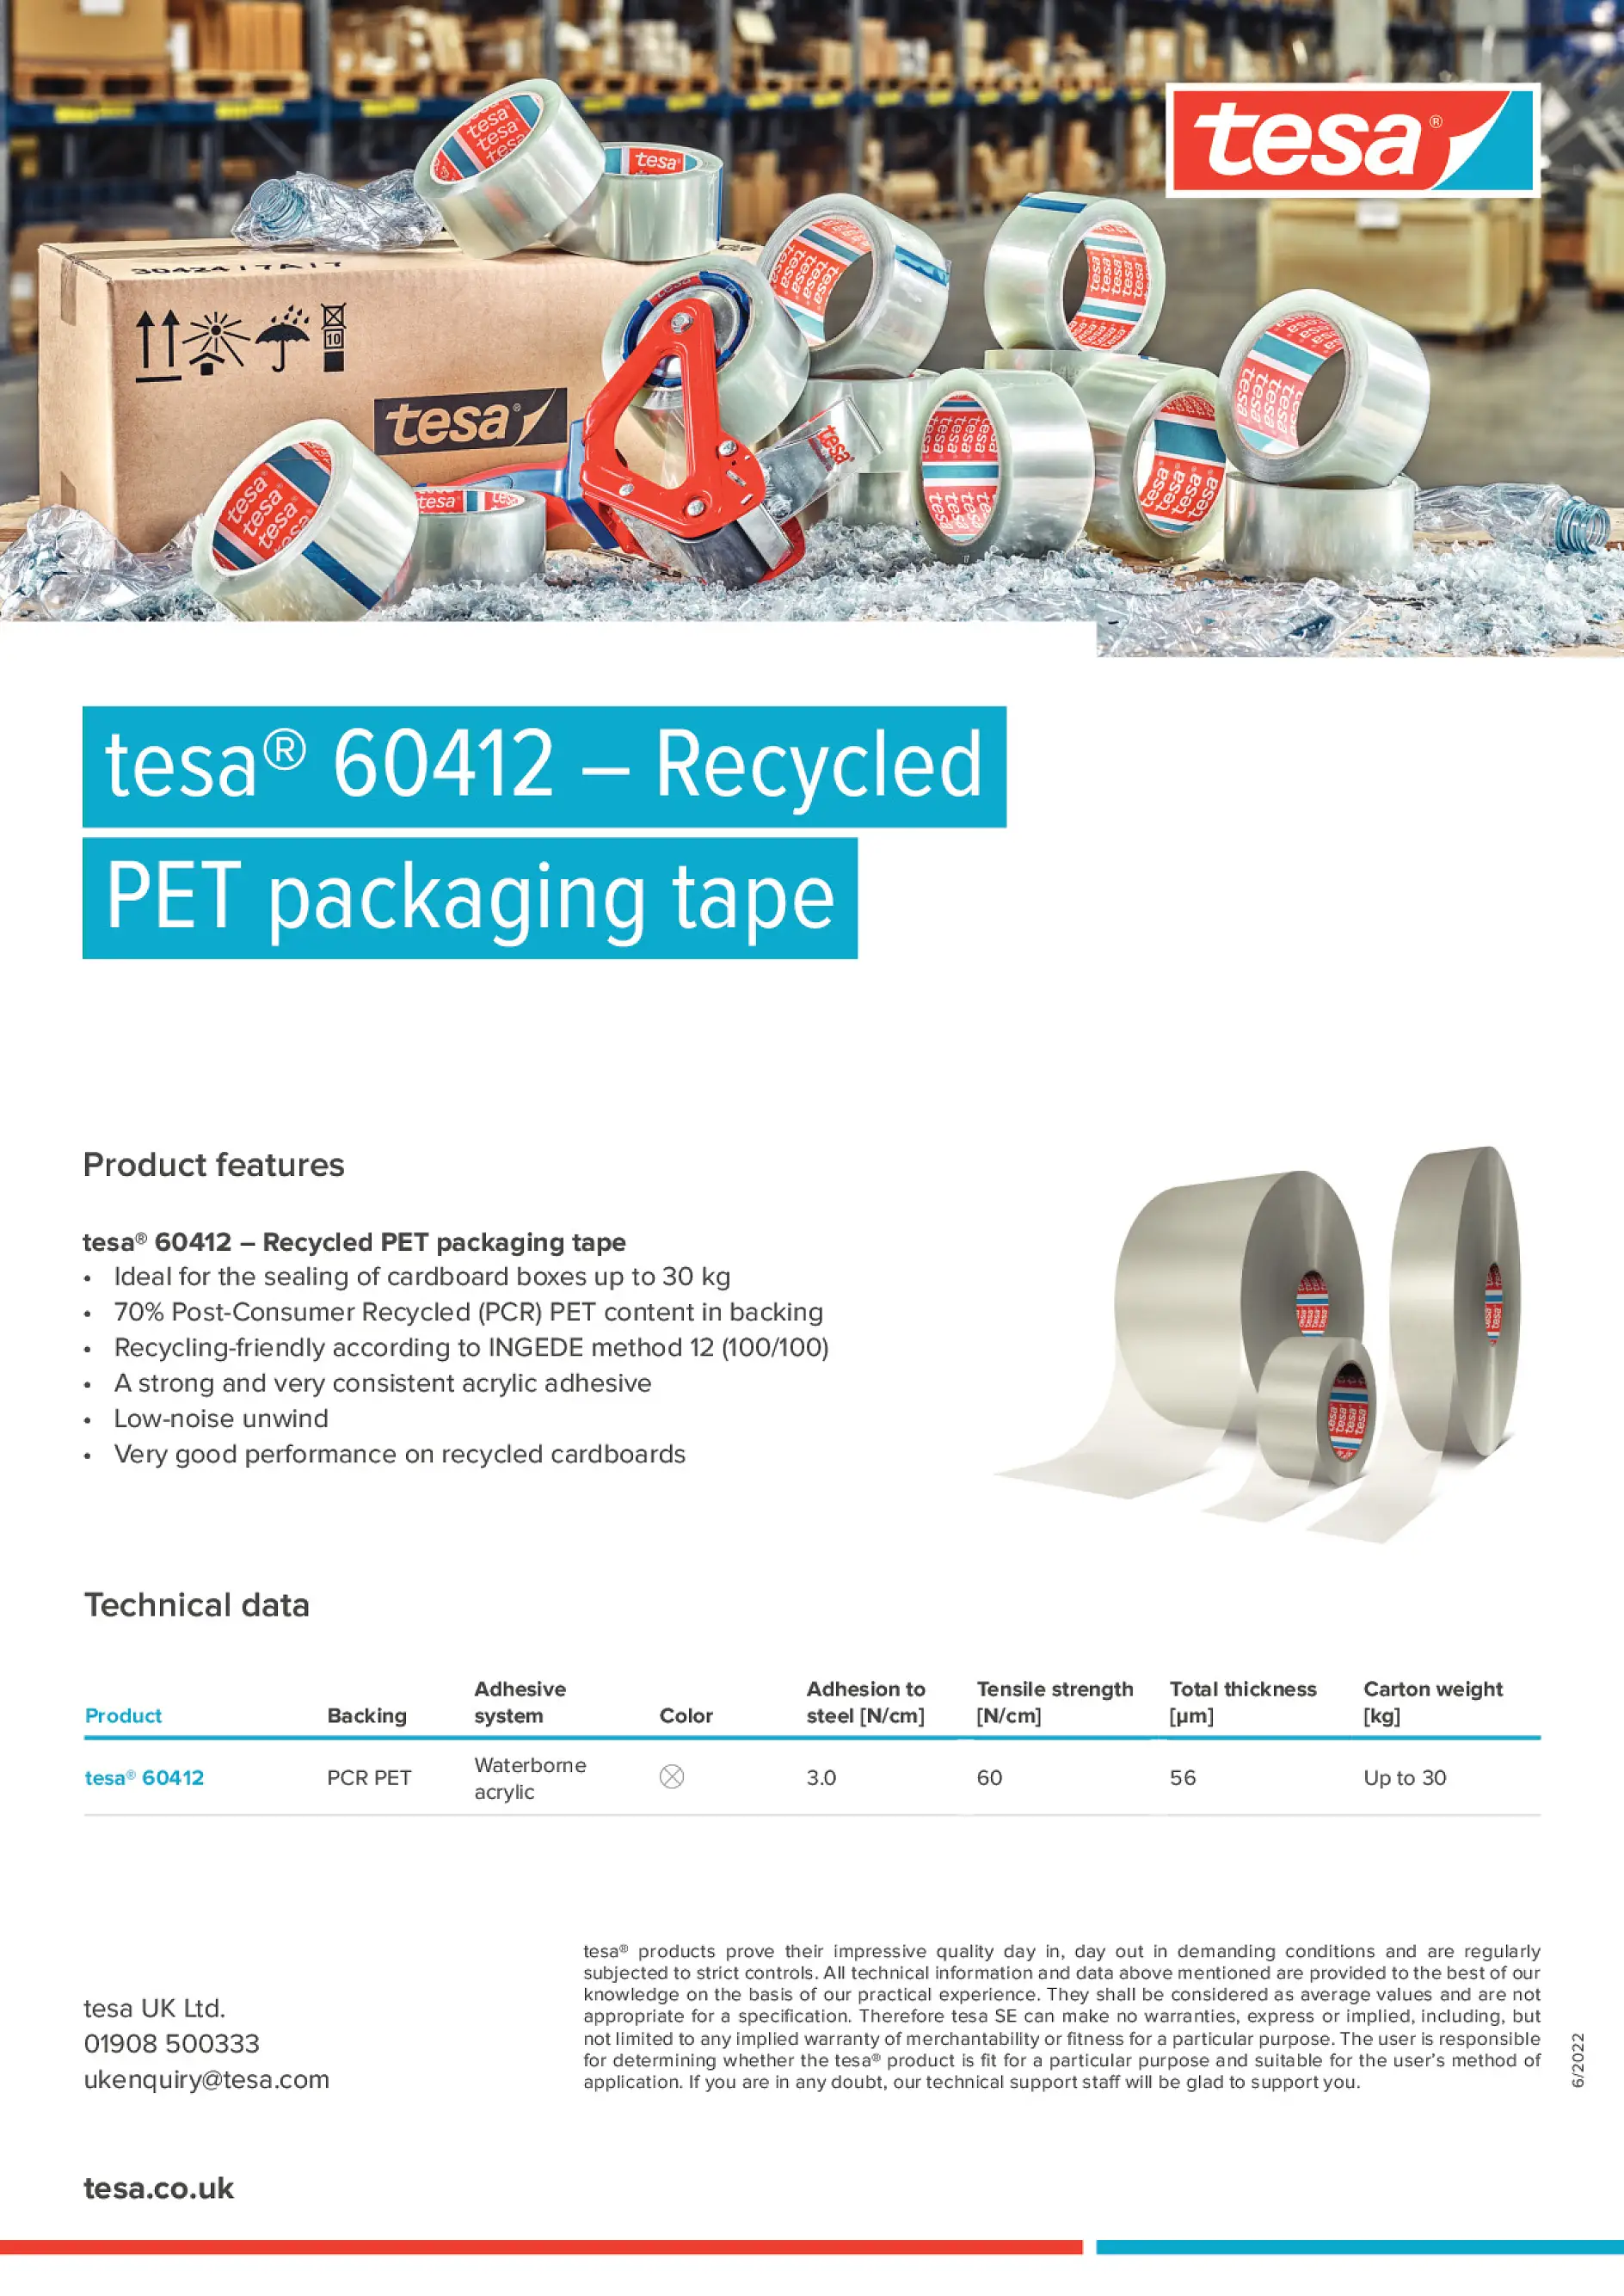 tesa® 60412 PCR PET Packaging Tape